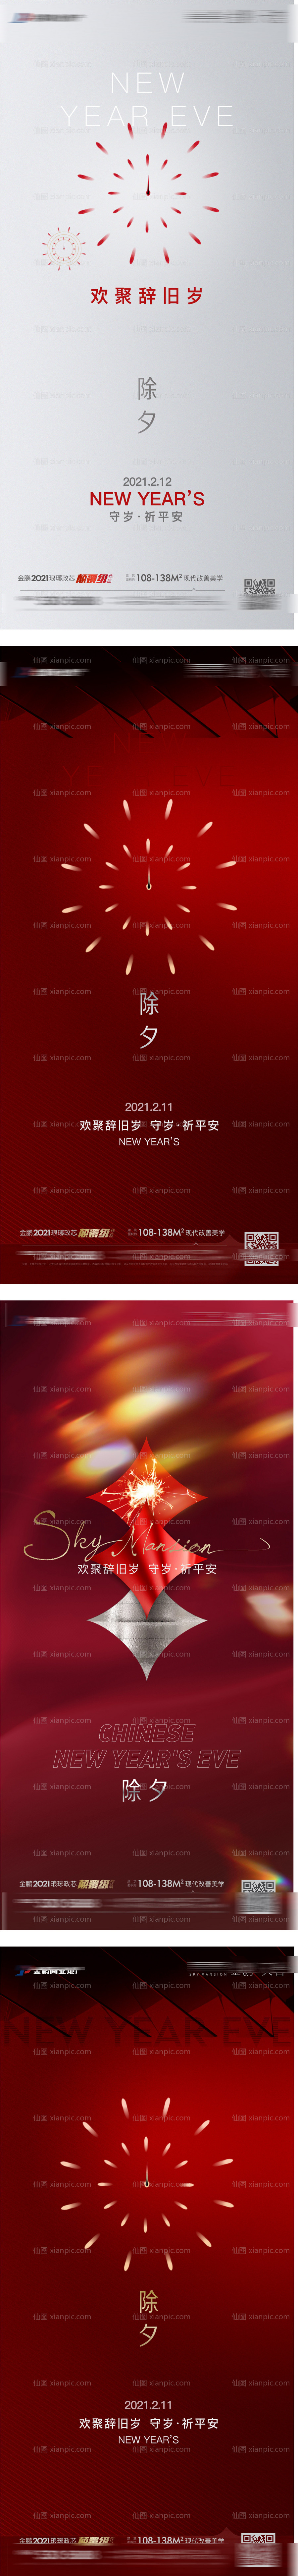 素材乐-新年除夕刷屏微信系列海报